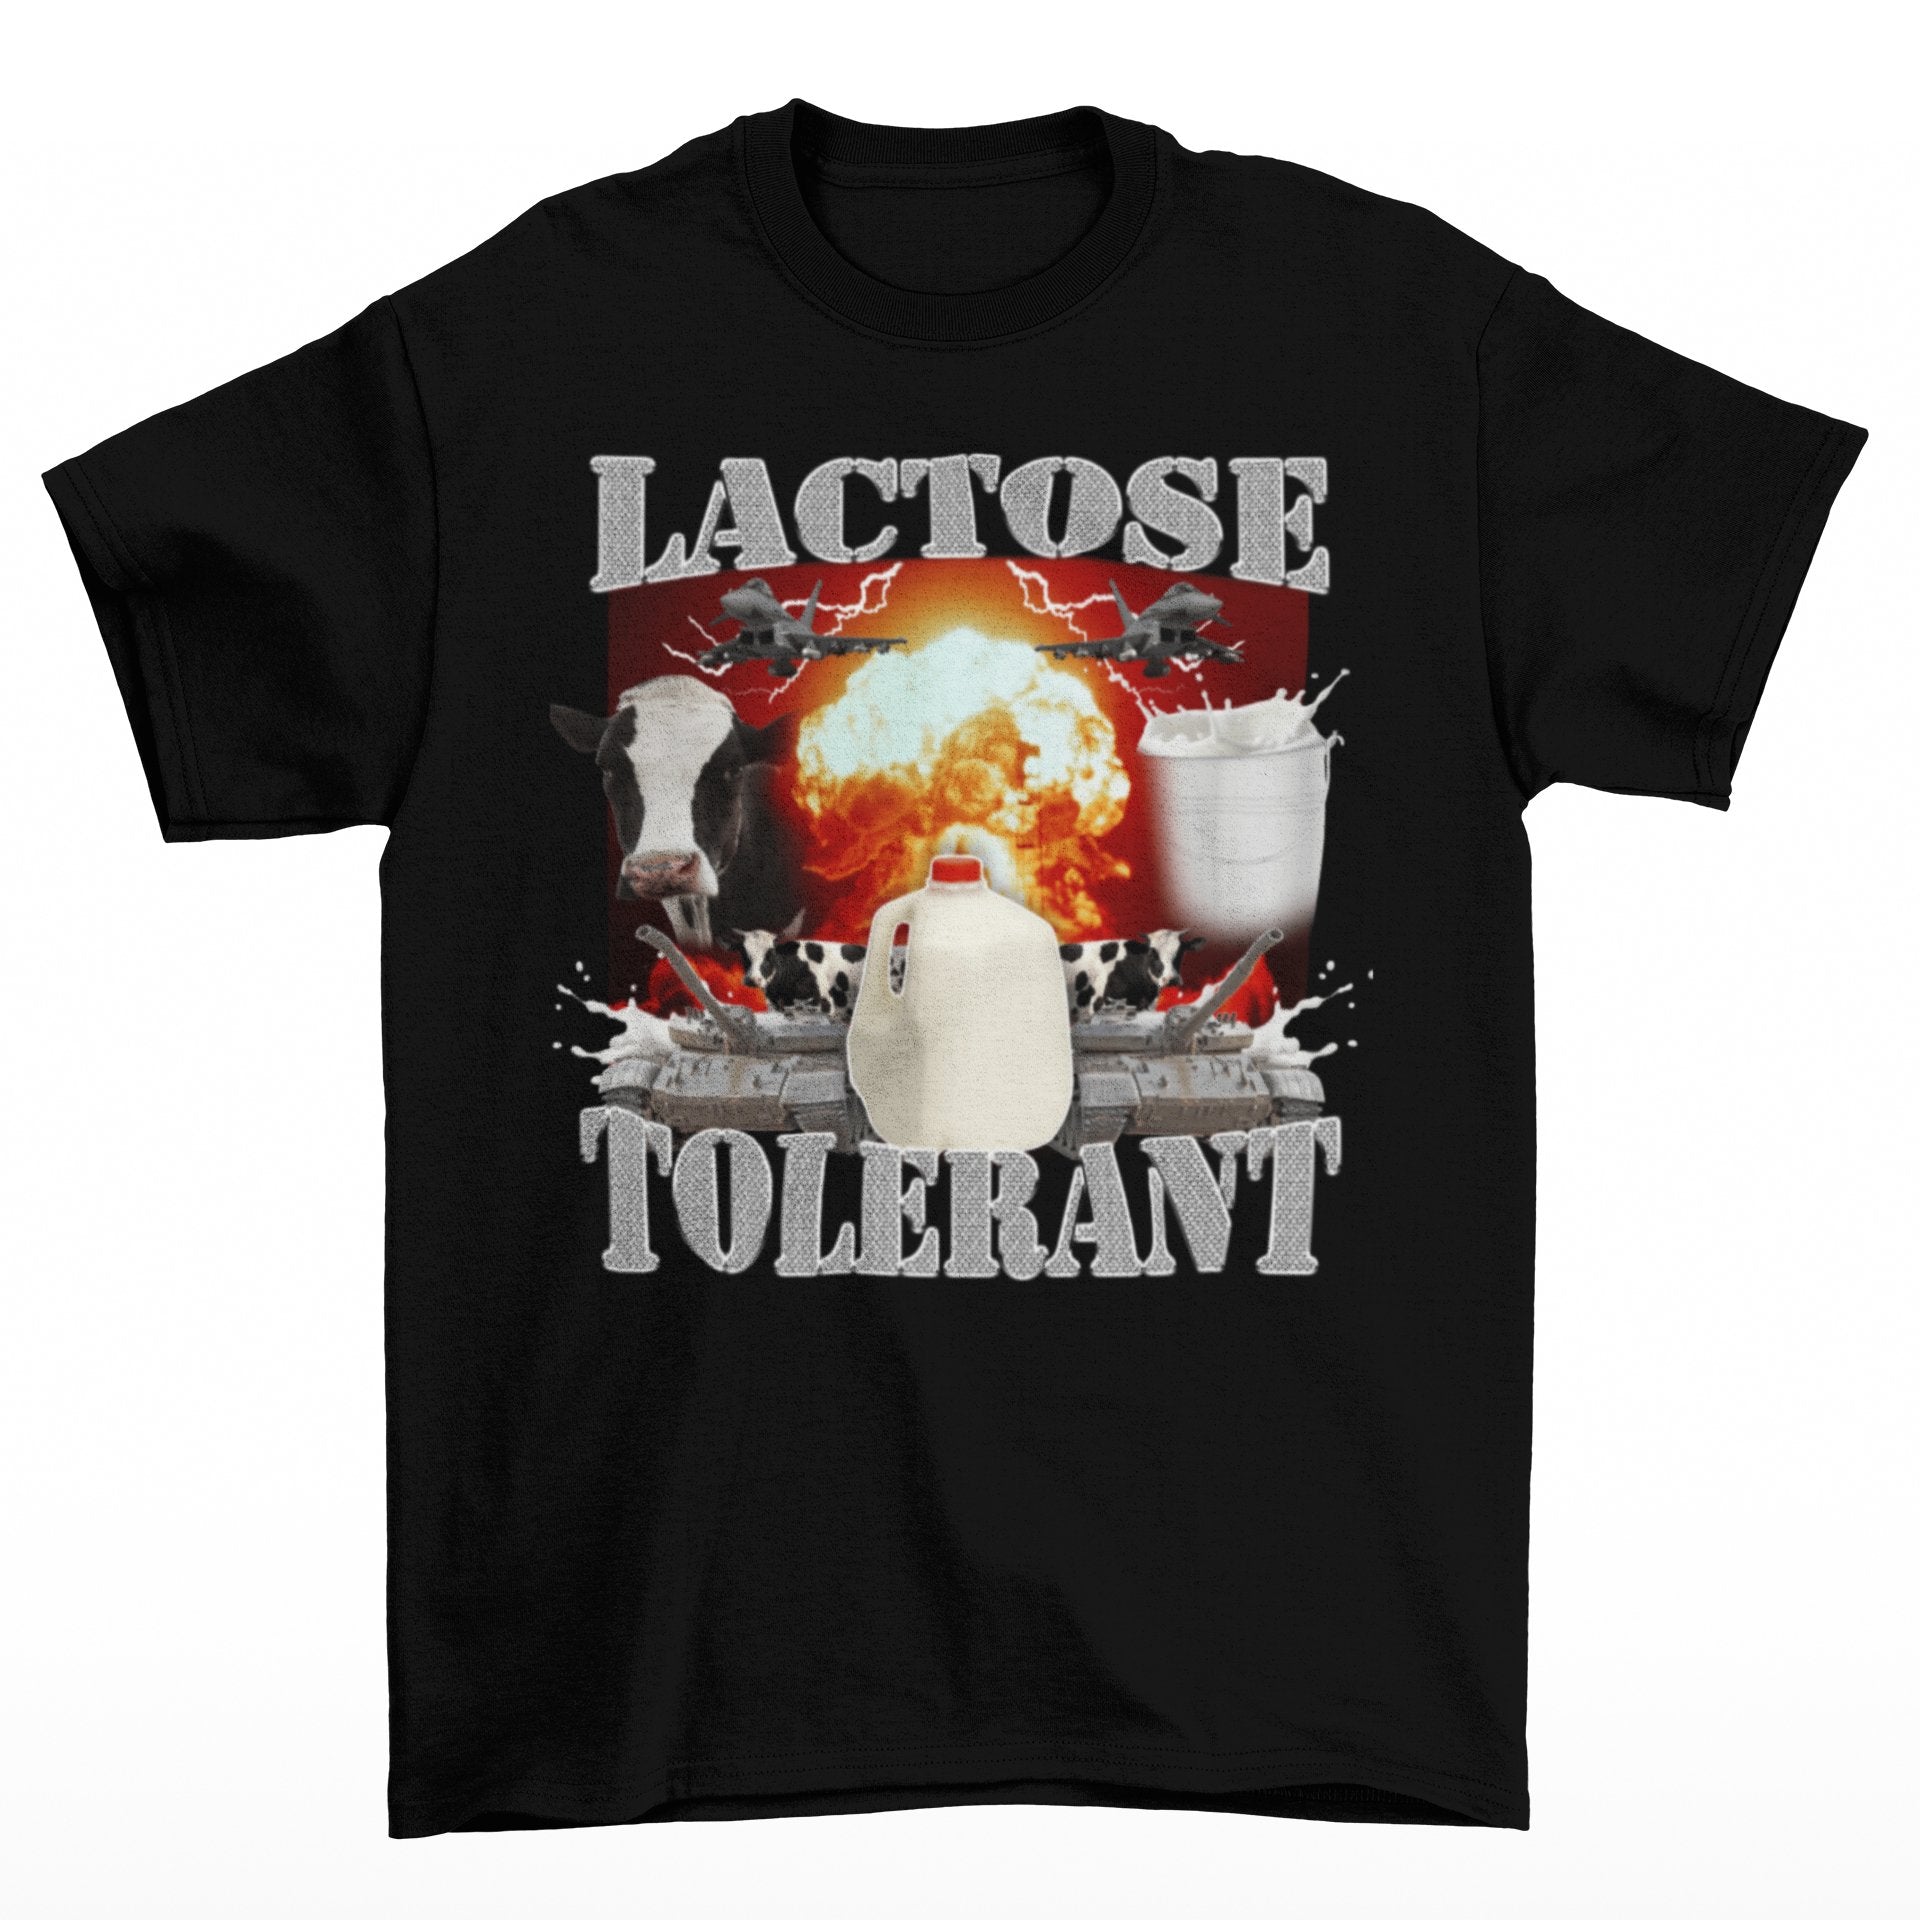 LACTOSE TOLERANT - HardShirts